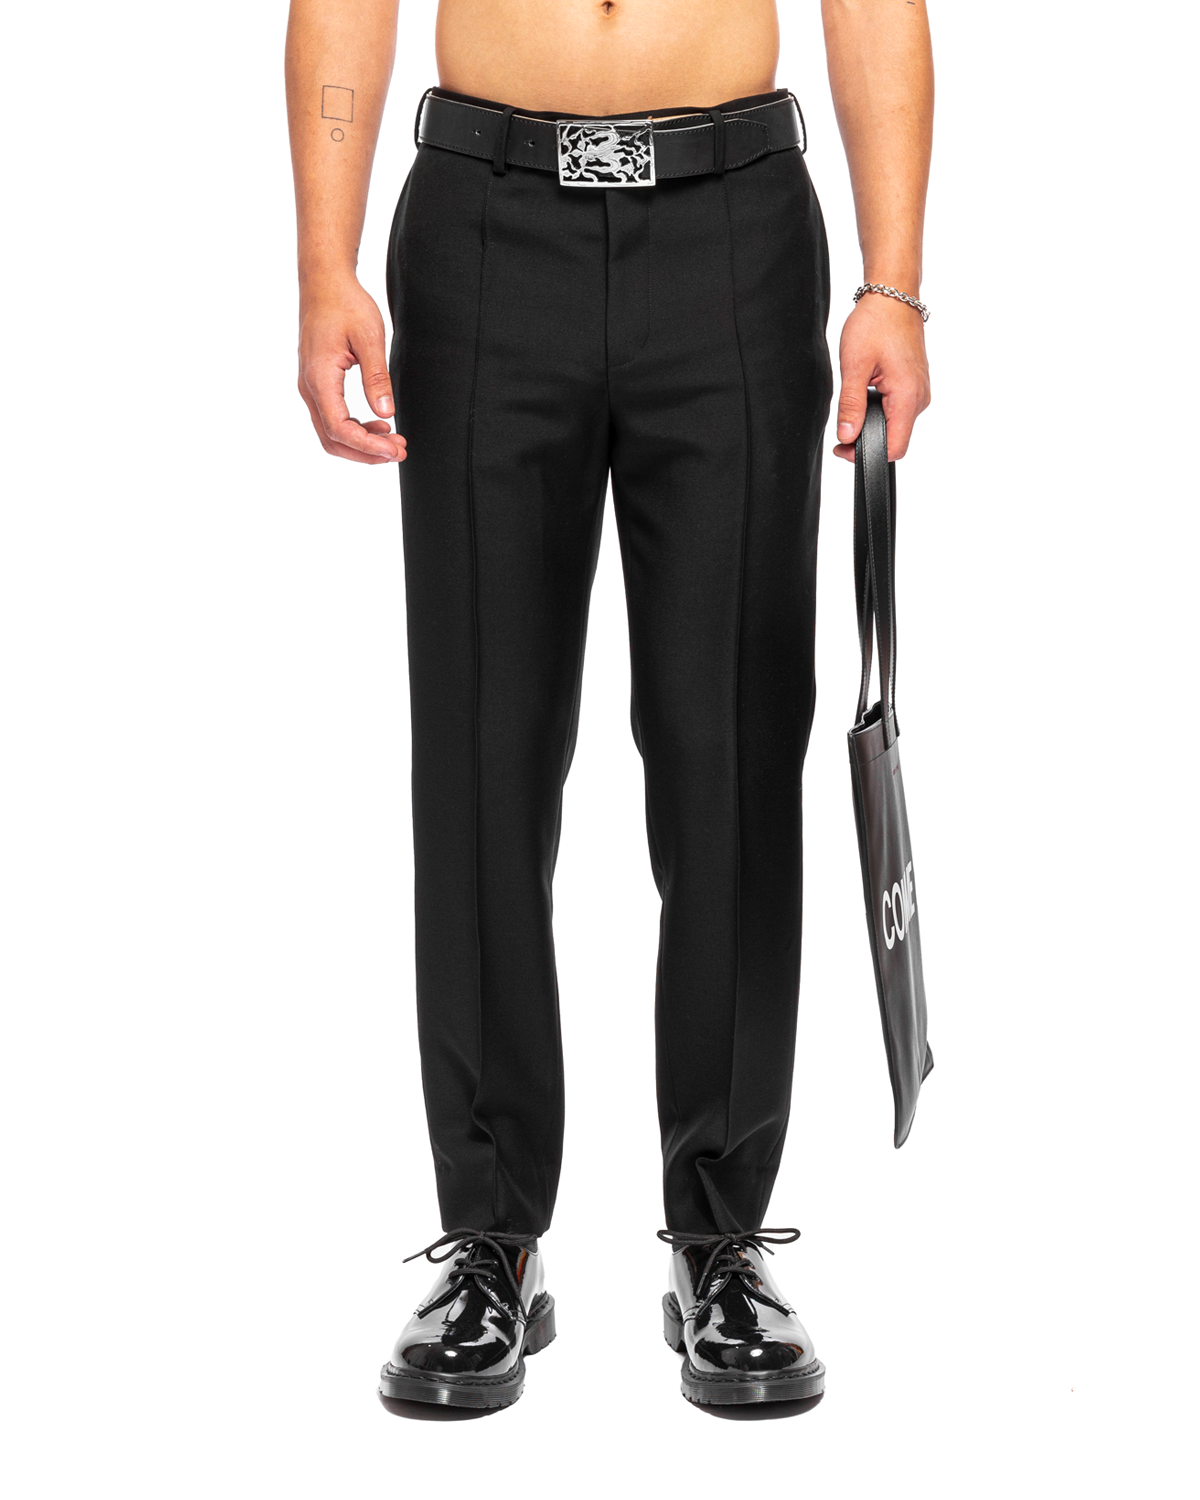 UC2B4504 Zipper Pants Black